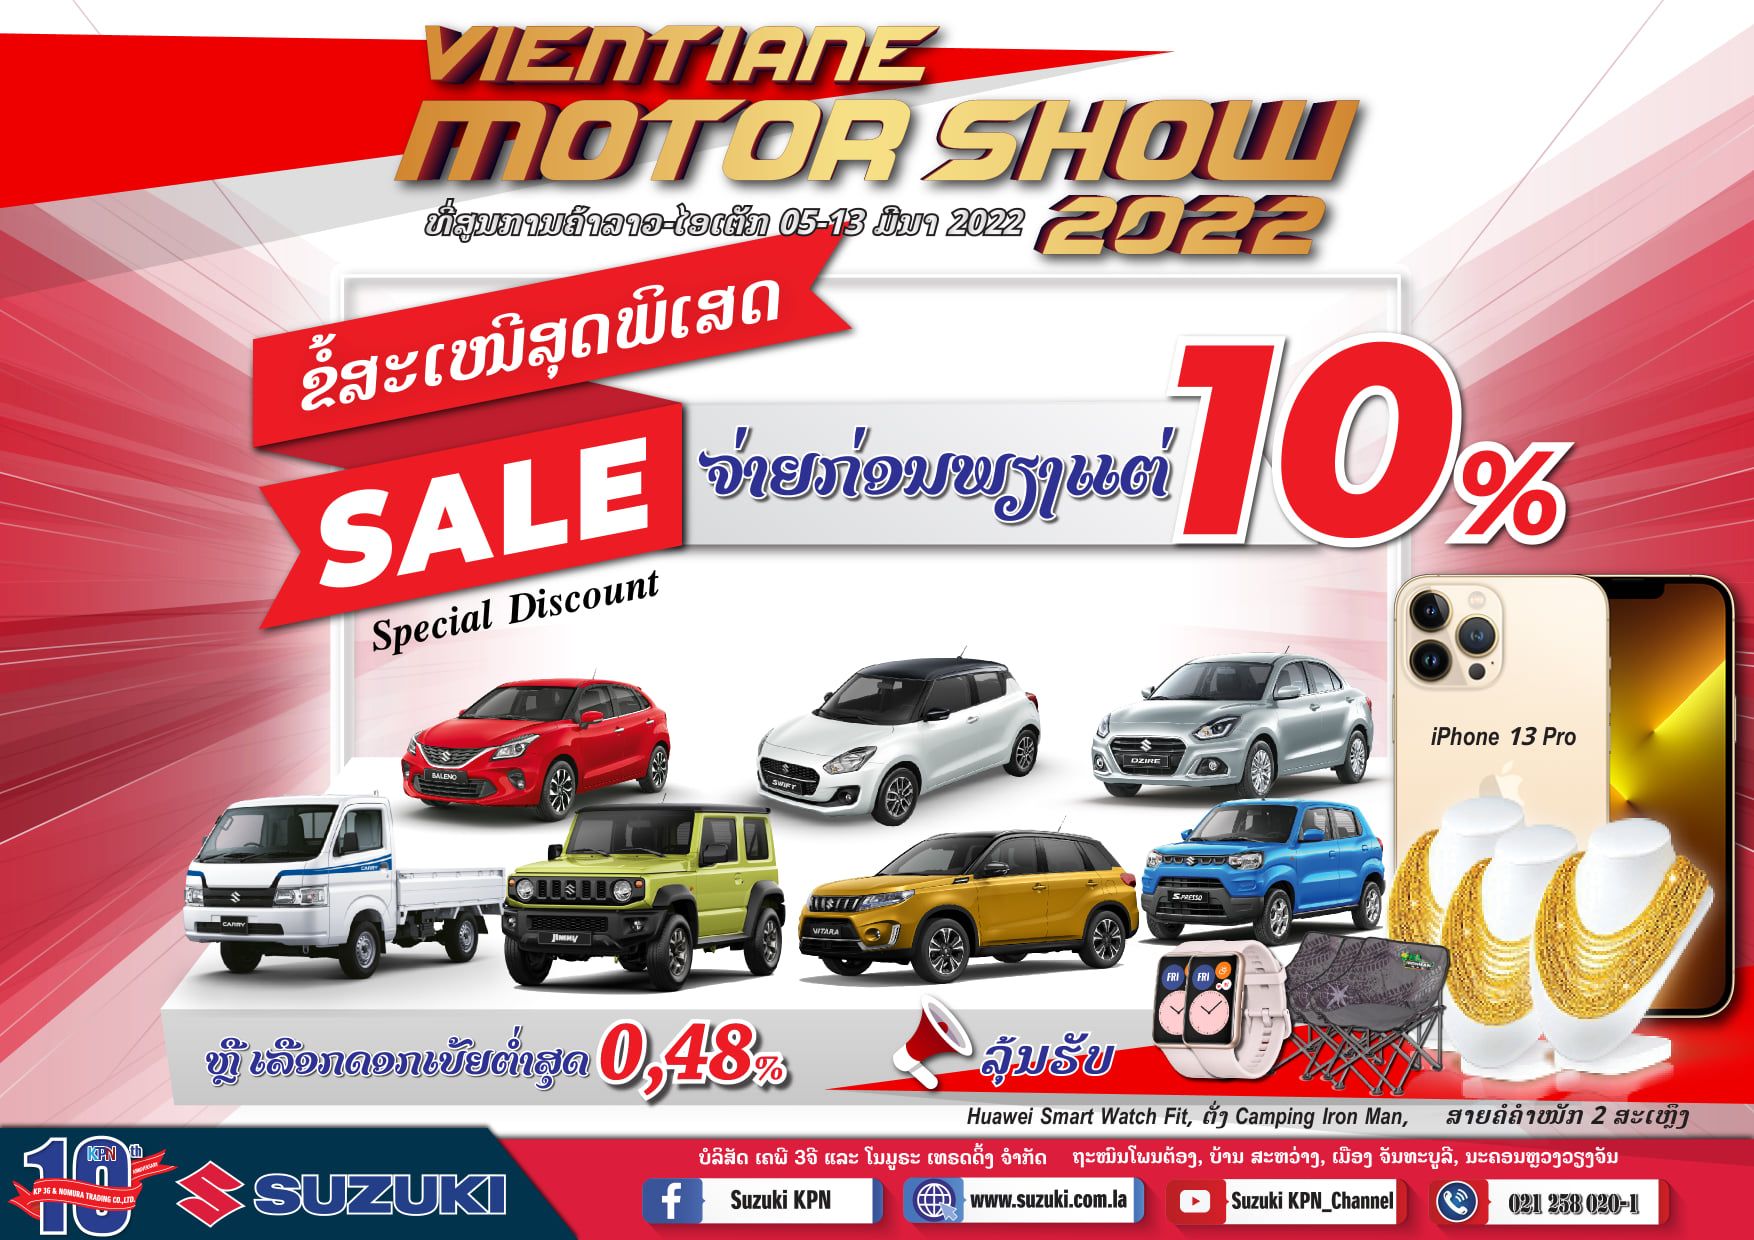 ໂປຣໂມຊັ້ນ “Vientiane Motor Show 2022”